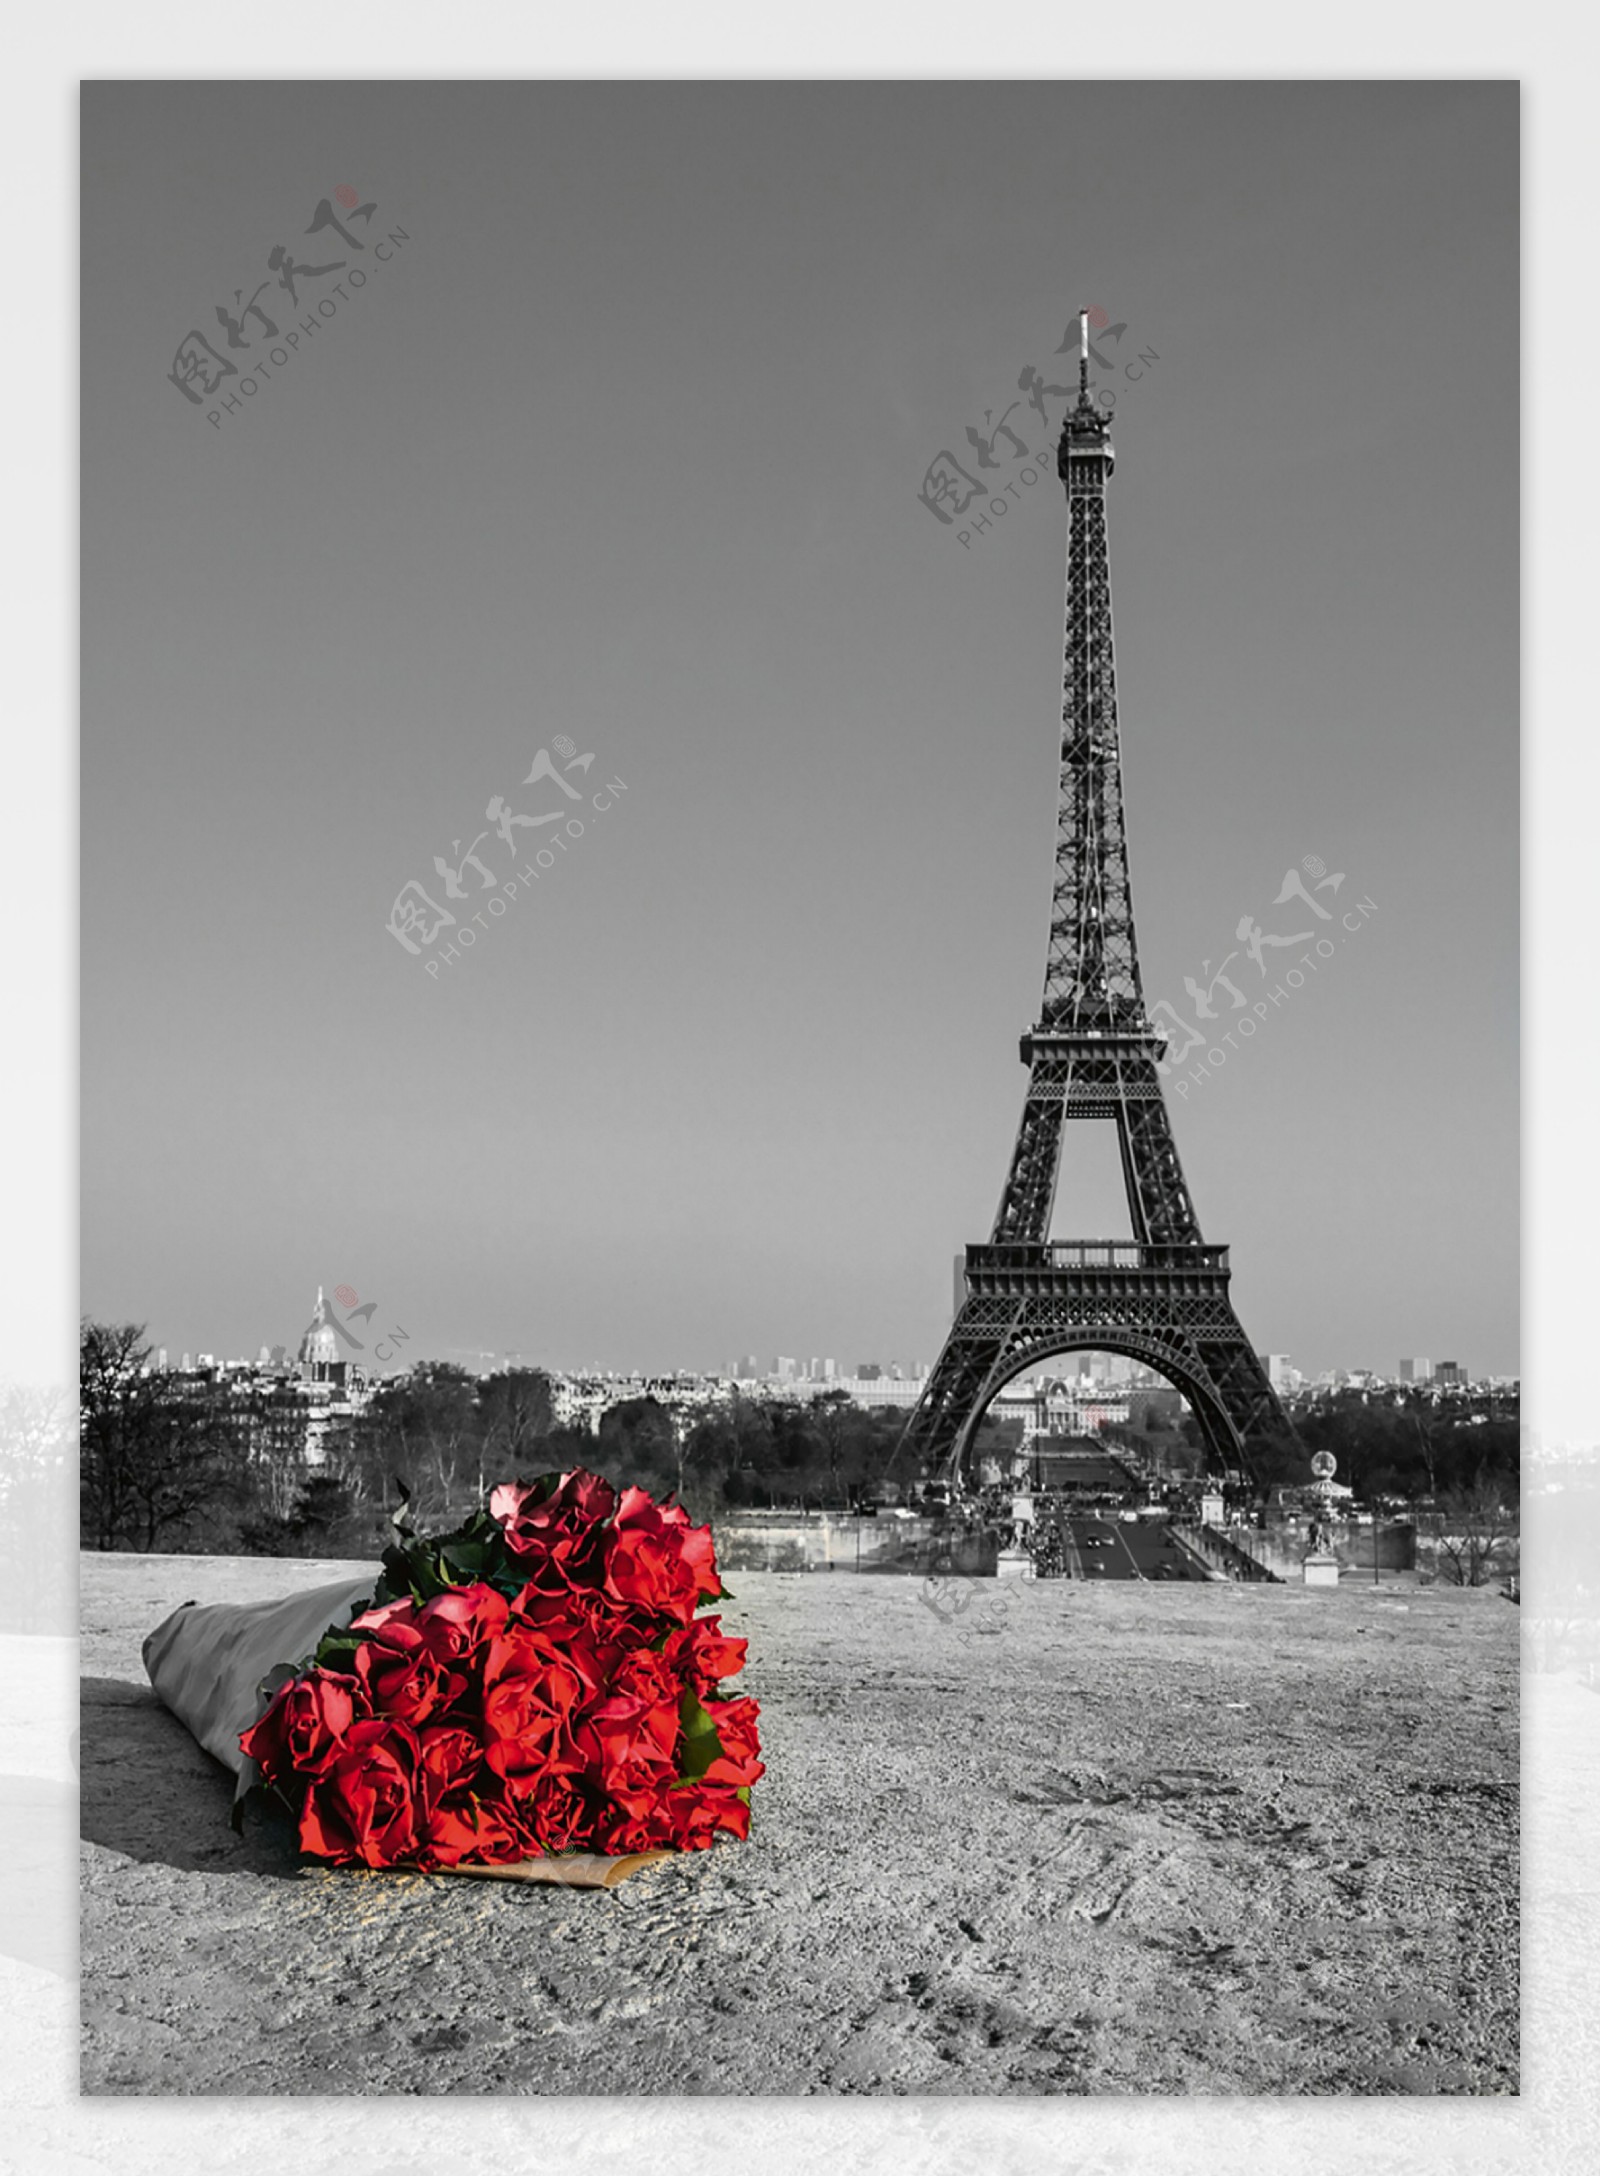 黑白彩色照片埃菲尔铁塔玫瑰花